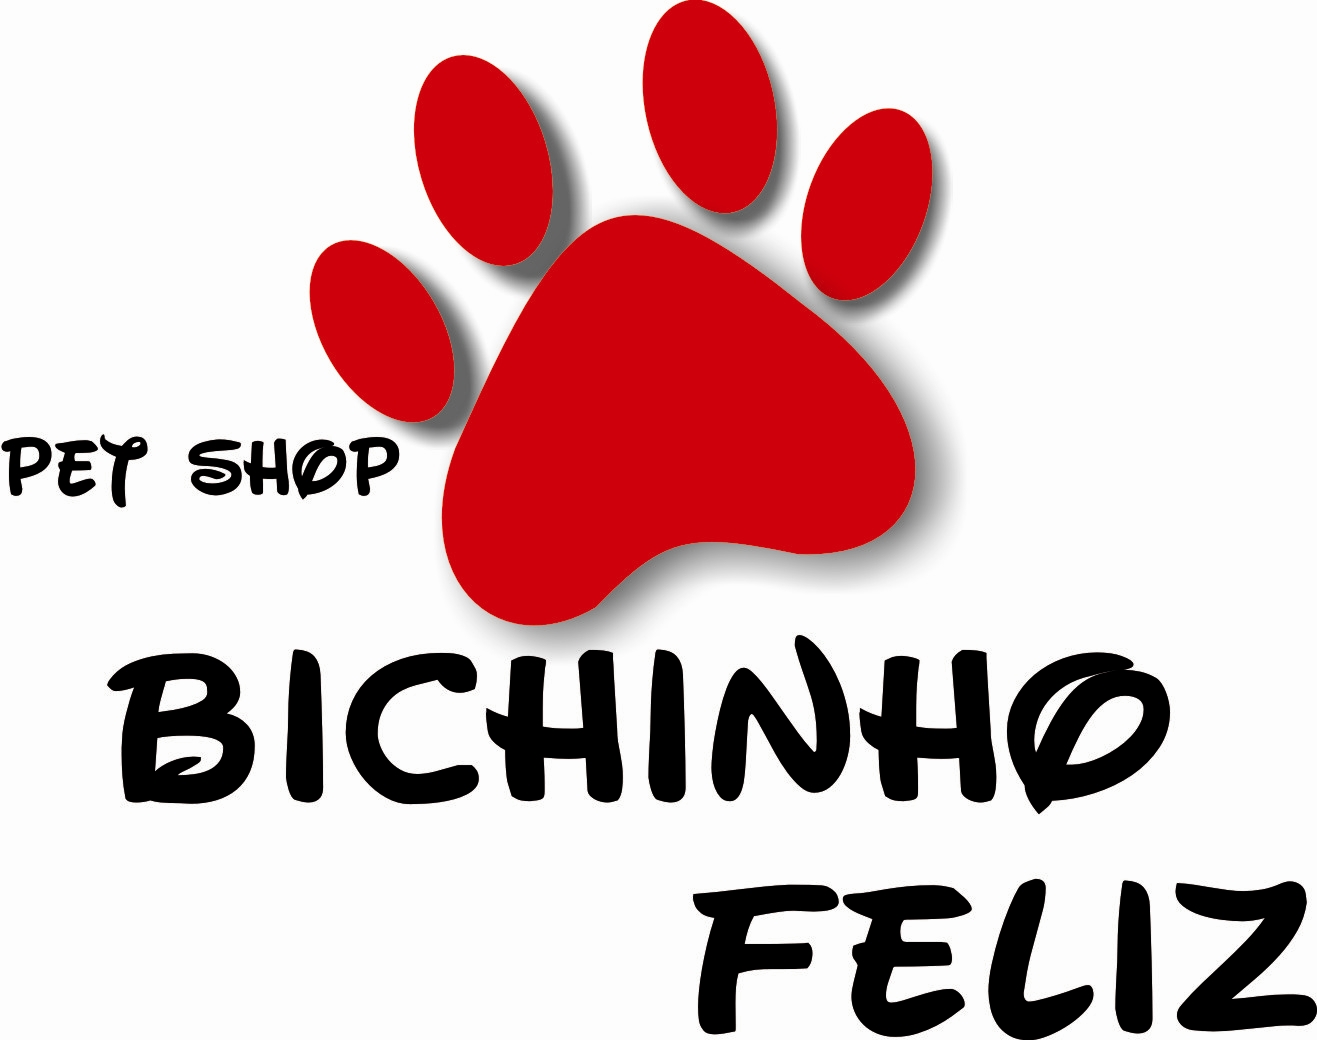 Logos shop ru. Petshop логотип. Pets лого. Вывески логотипы Pet shop. Зоовый магазин логотип.